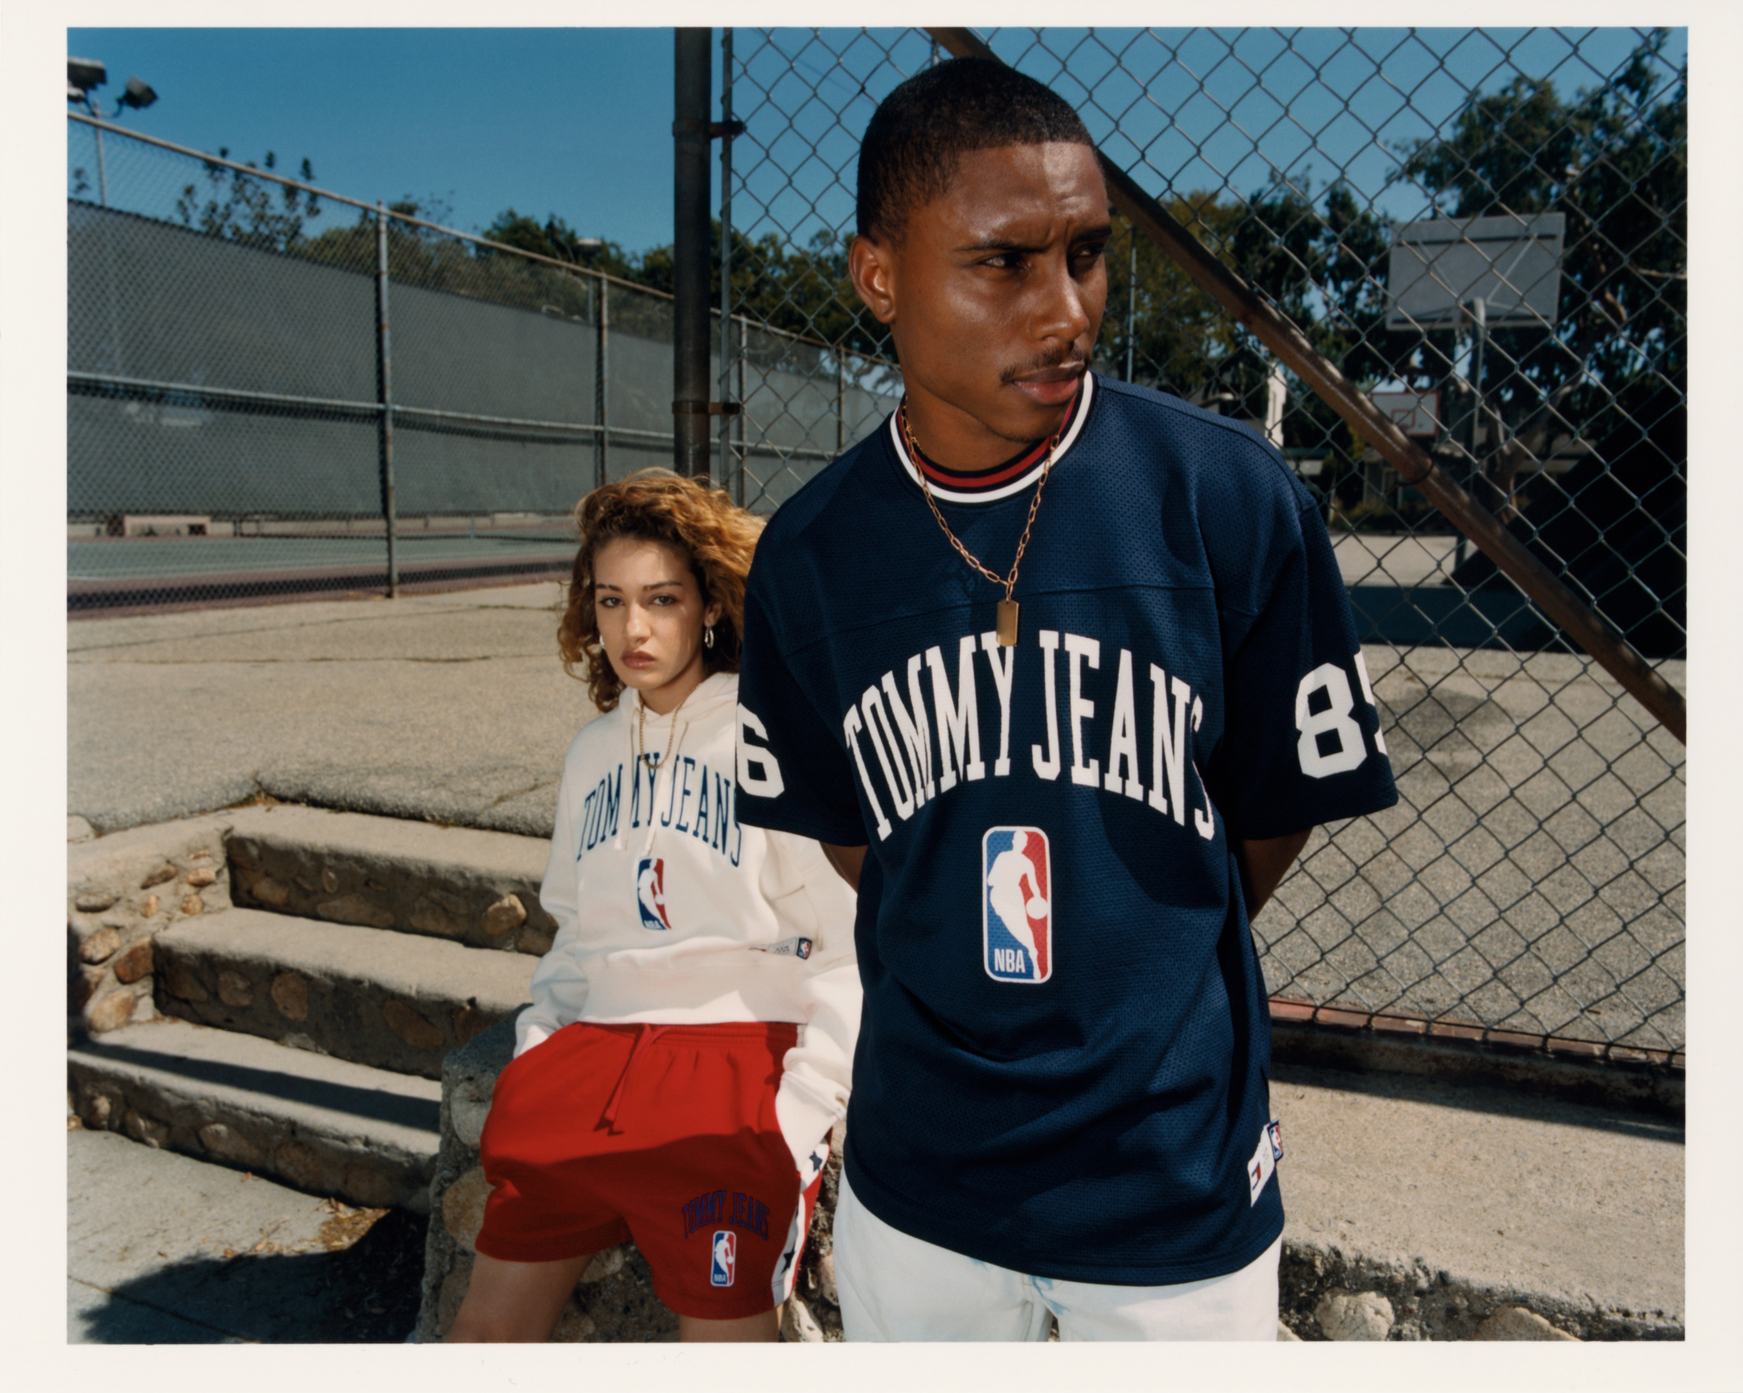 SUPF22 EUAPAC NBA DUO MESHSKATE CROPHOODIE 300 39L 1 - Tommy Jeans hợp tác cùng NBA ra mắt BST đậm chất thời trang đường phố thập niên 90